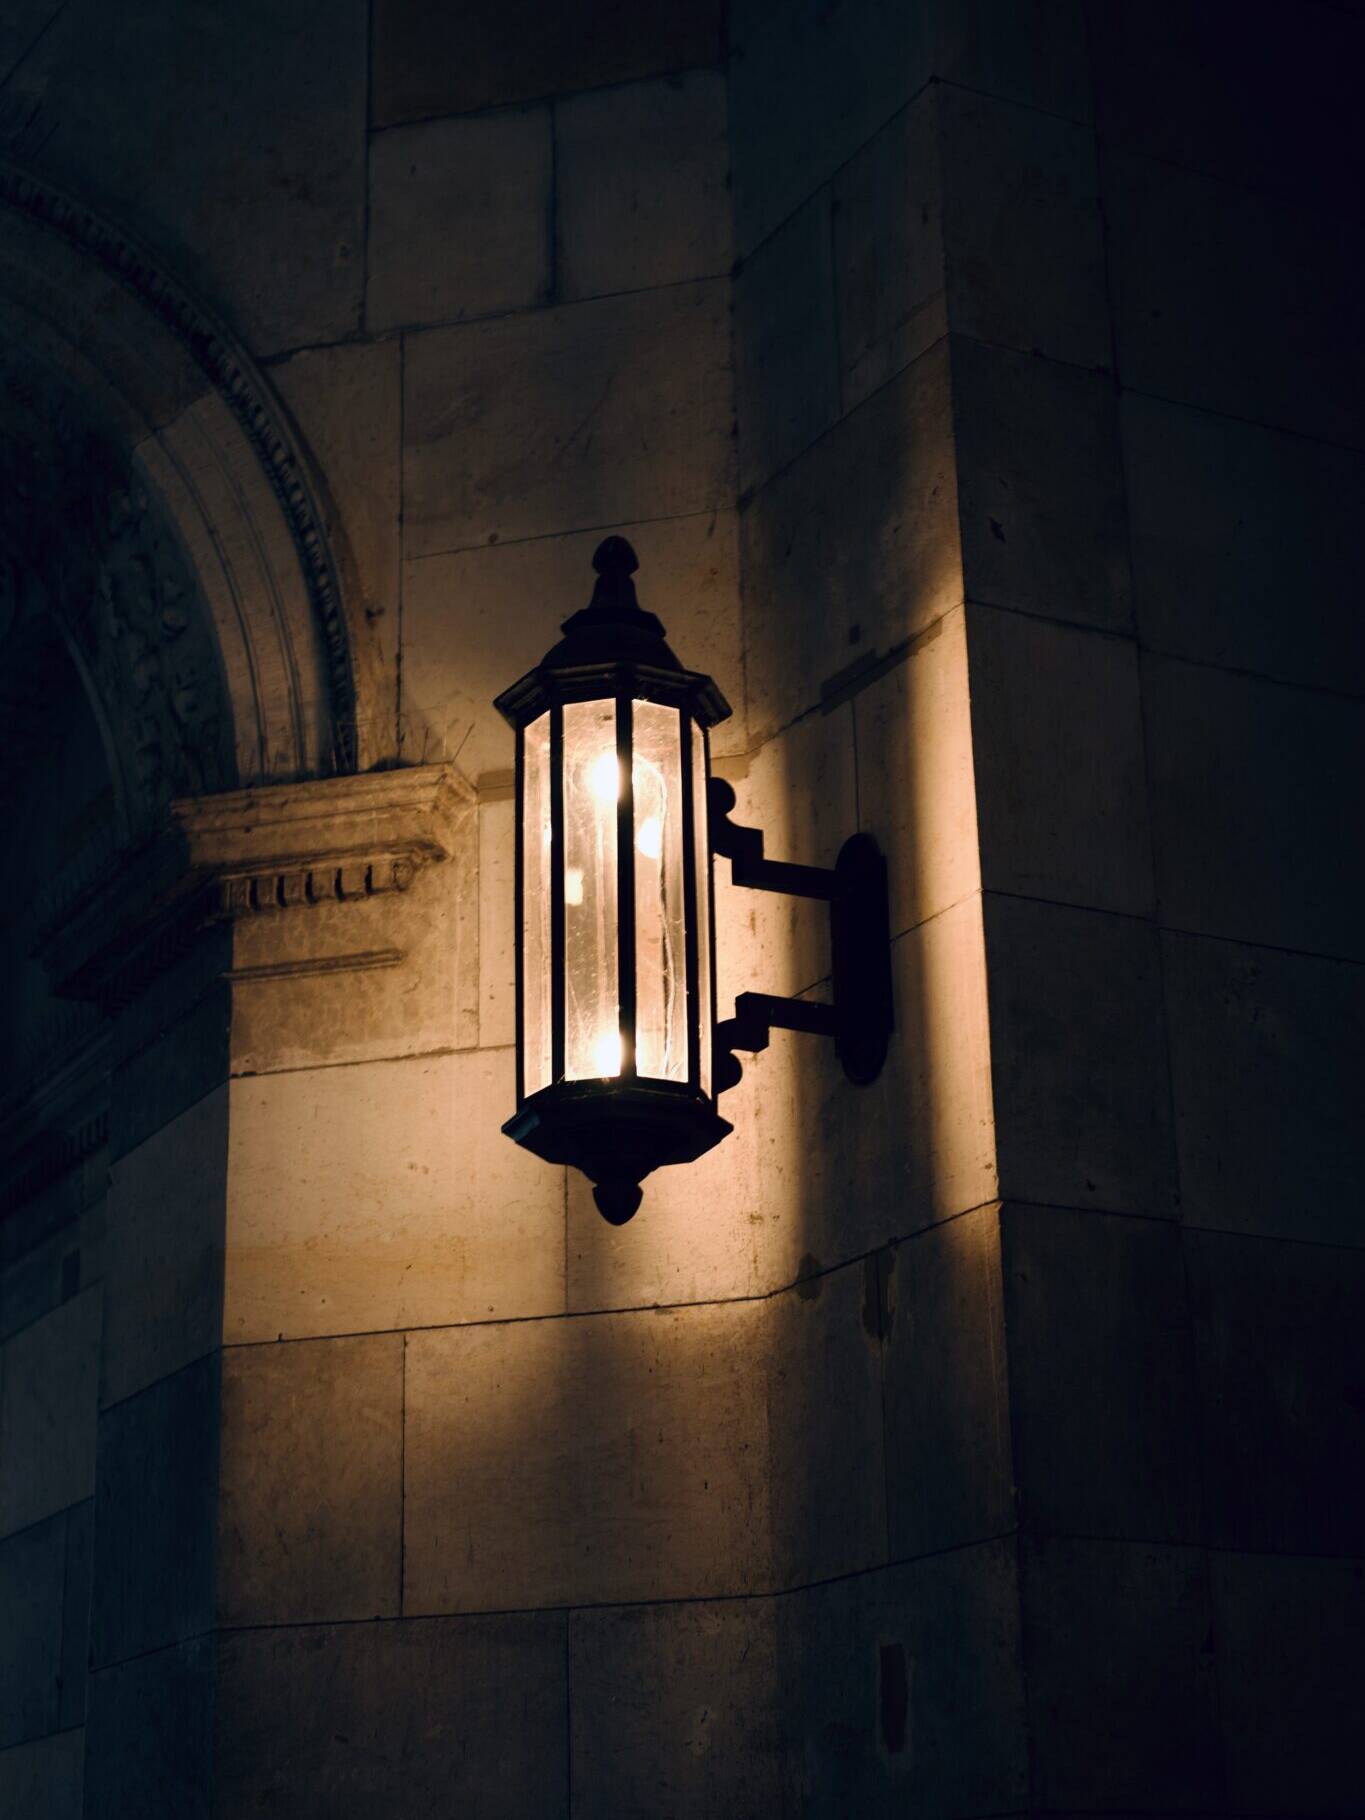 Om du skal erstatte eller bytte ut belysning eller spesielle lamper i verneverdige bygg, kan det være ekstra hensyn å ta. Foto: Tobias Jetter